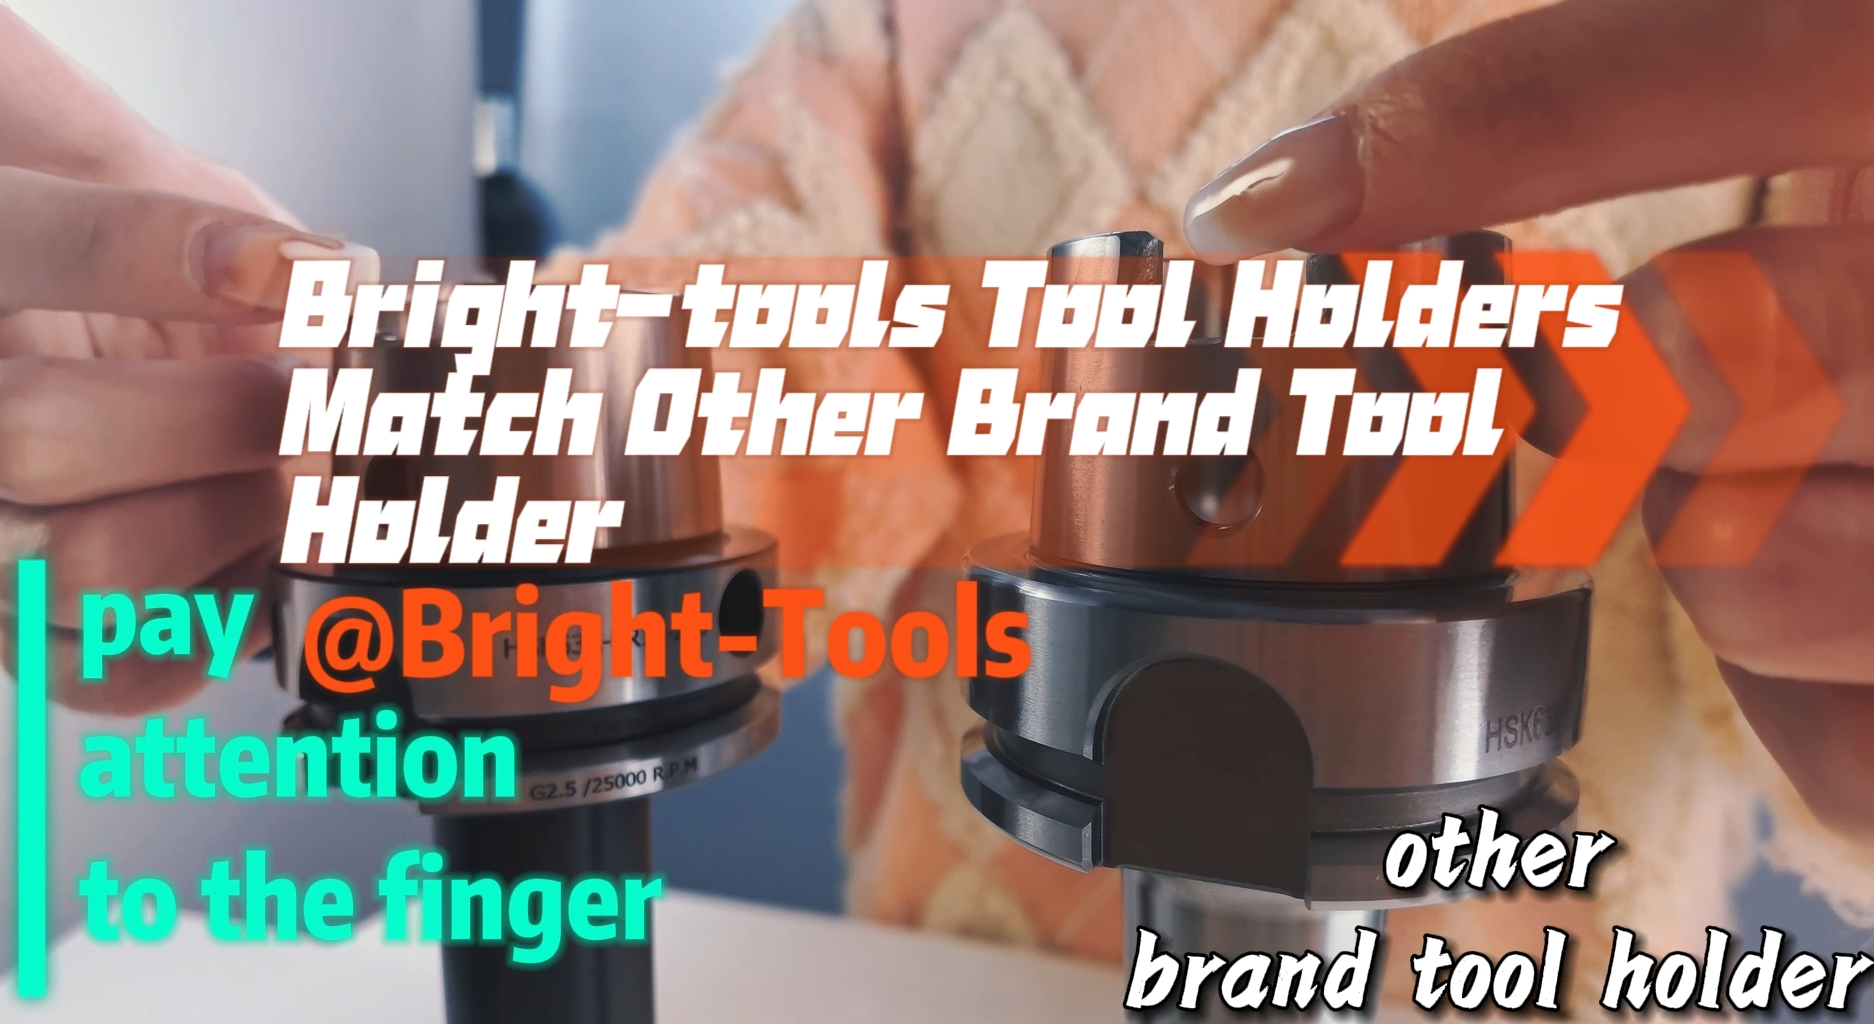 Portaherramientas de herramientas brillantes coinciden con otros portaherramientas de marca